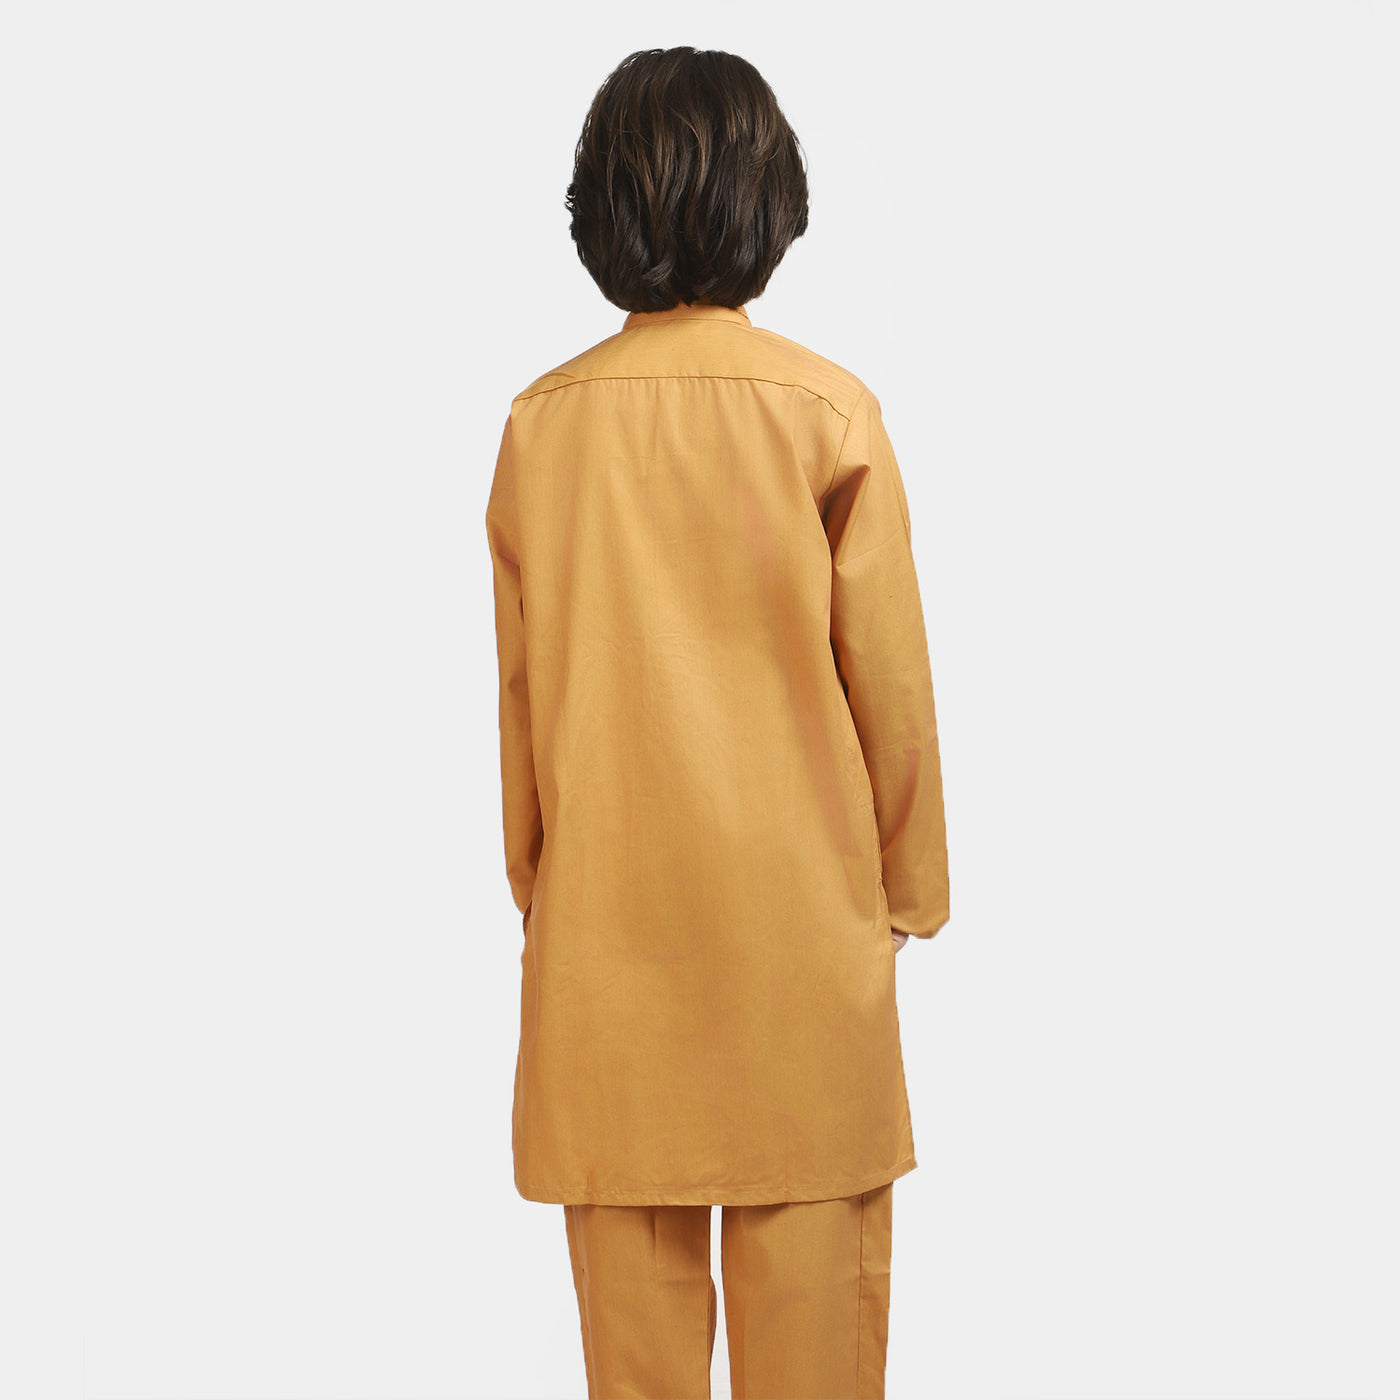 Boys Embroidered Kurta Pajama Suit - Mustard